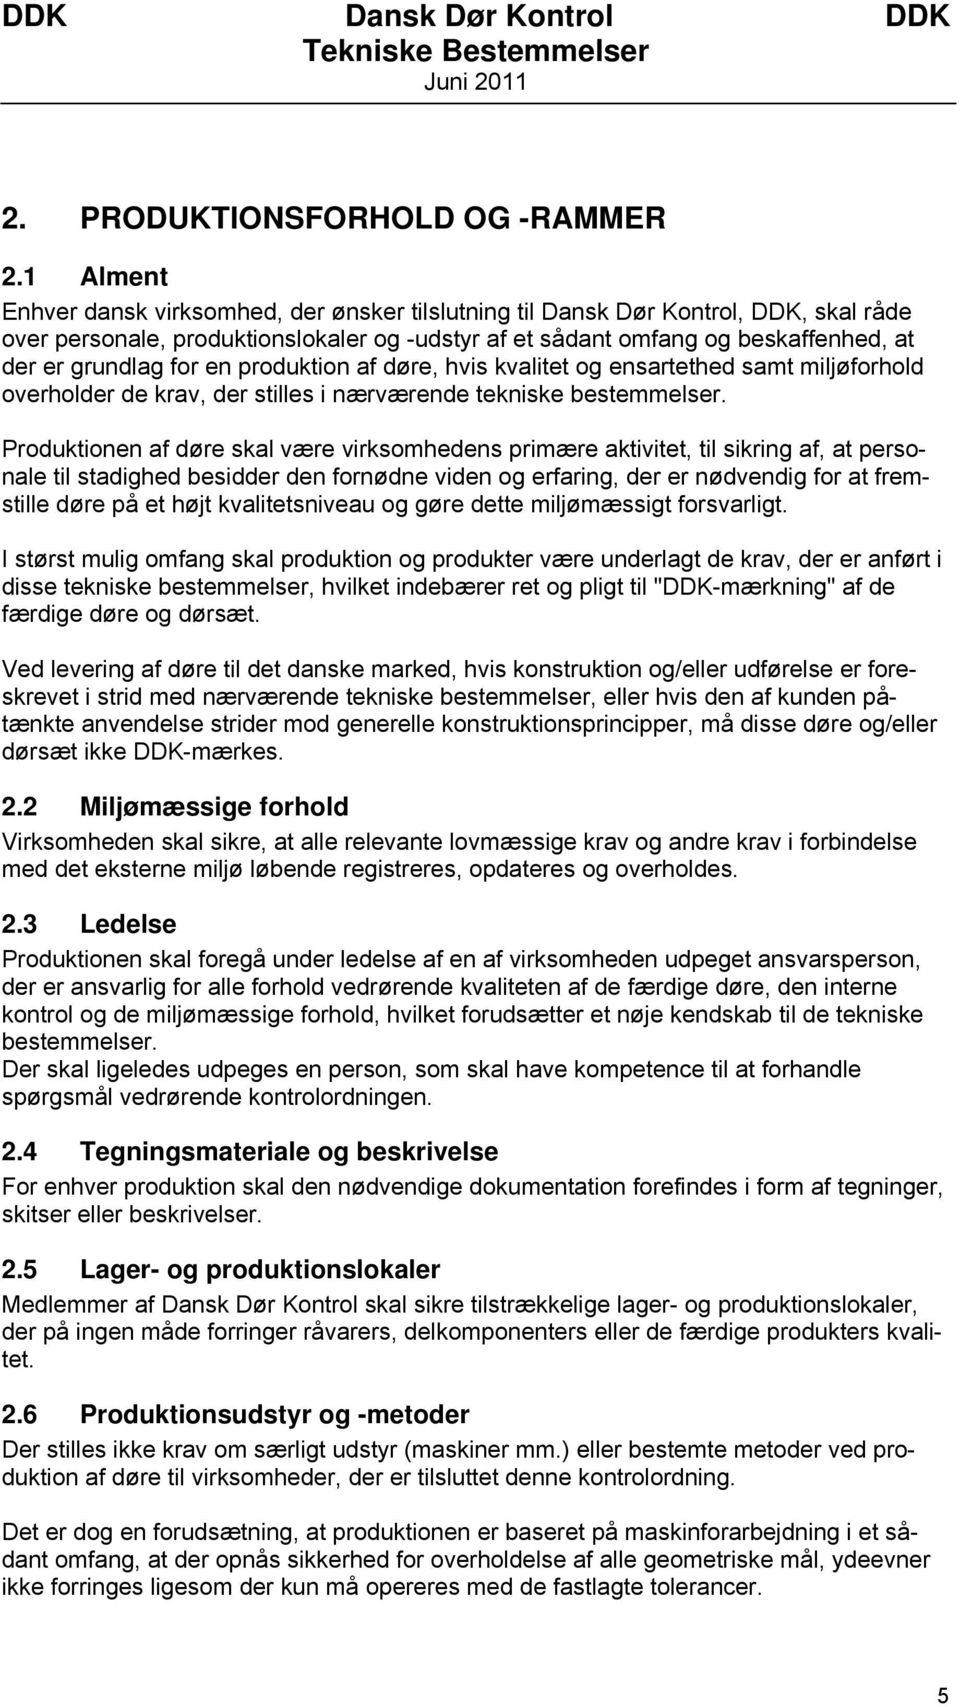 TEKNISKE BESTEMMELSER FOR DANSK DØR KONTROL - PDF Gratis download